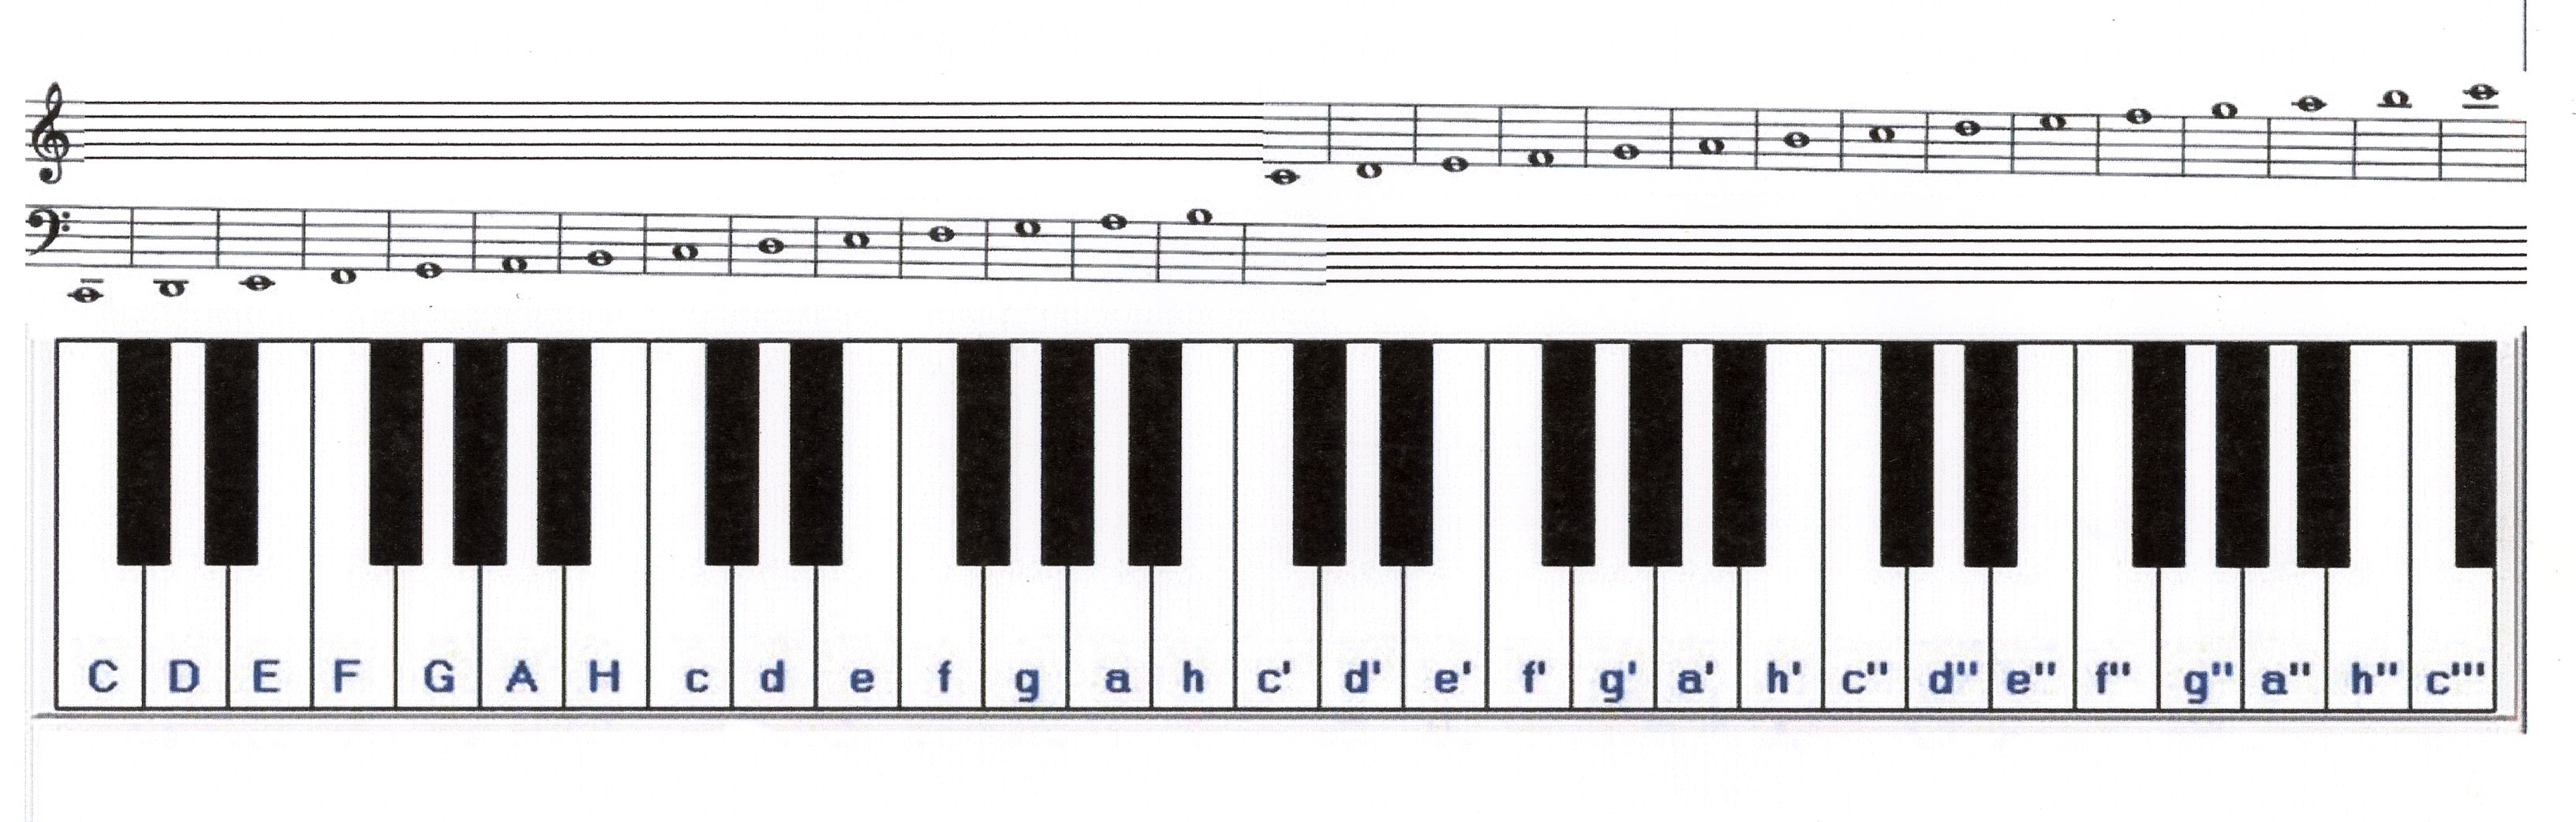 Klaviertastatur Beschriftet Zum Ausdrucken